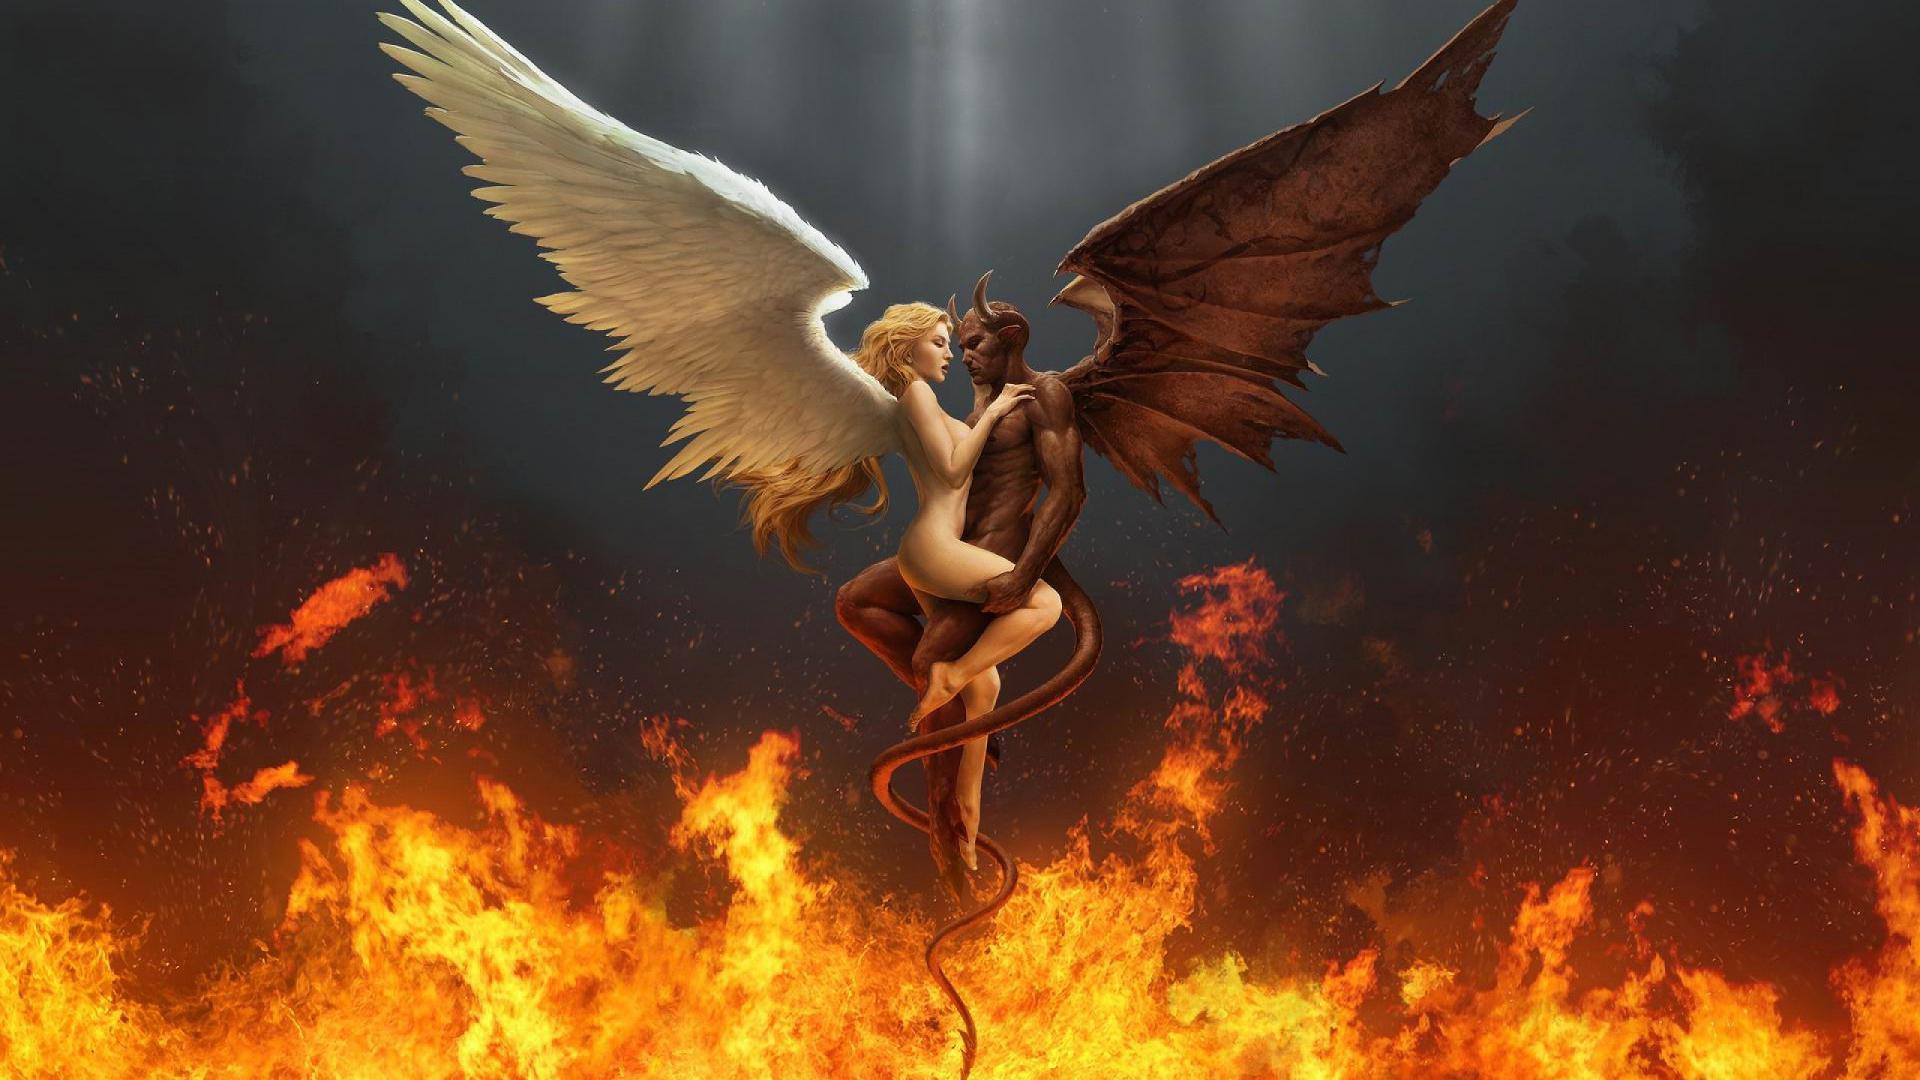 Ангел и Демон в огне, обои на рабочий стол 3д, 2560 на 1440 пикселей